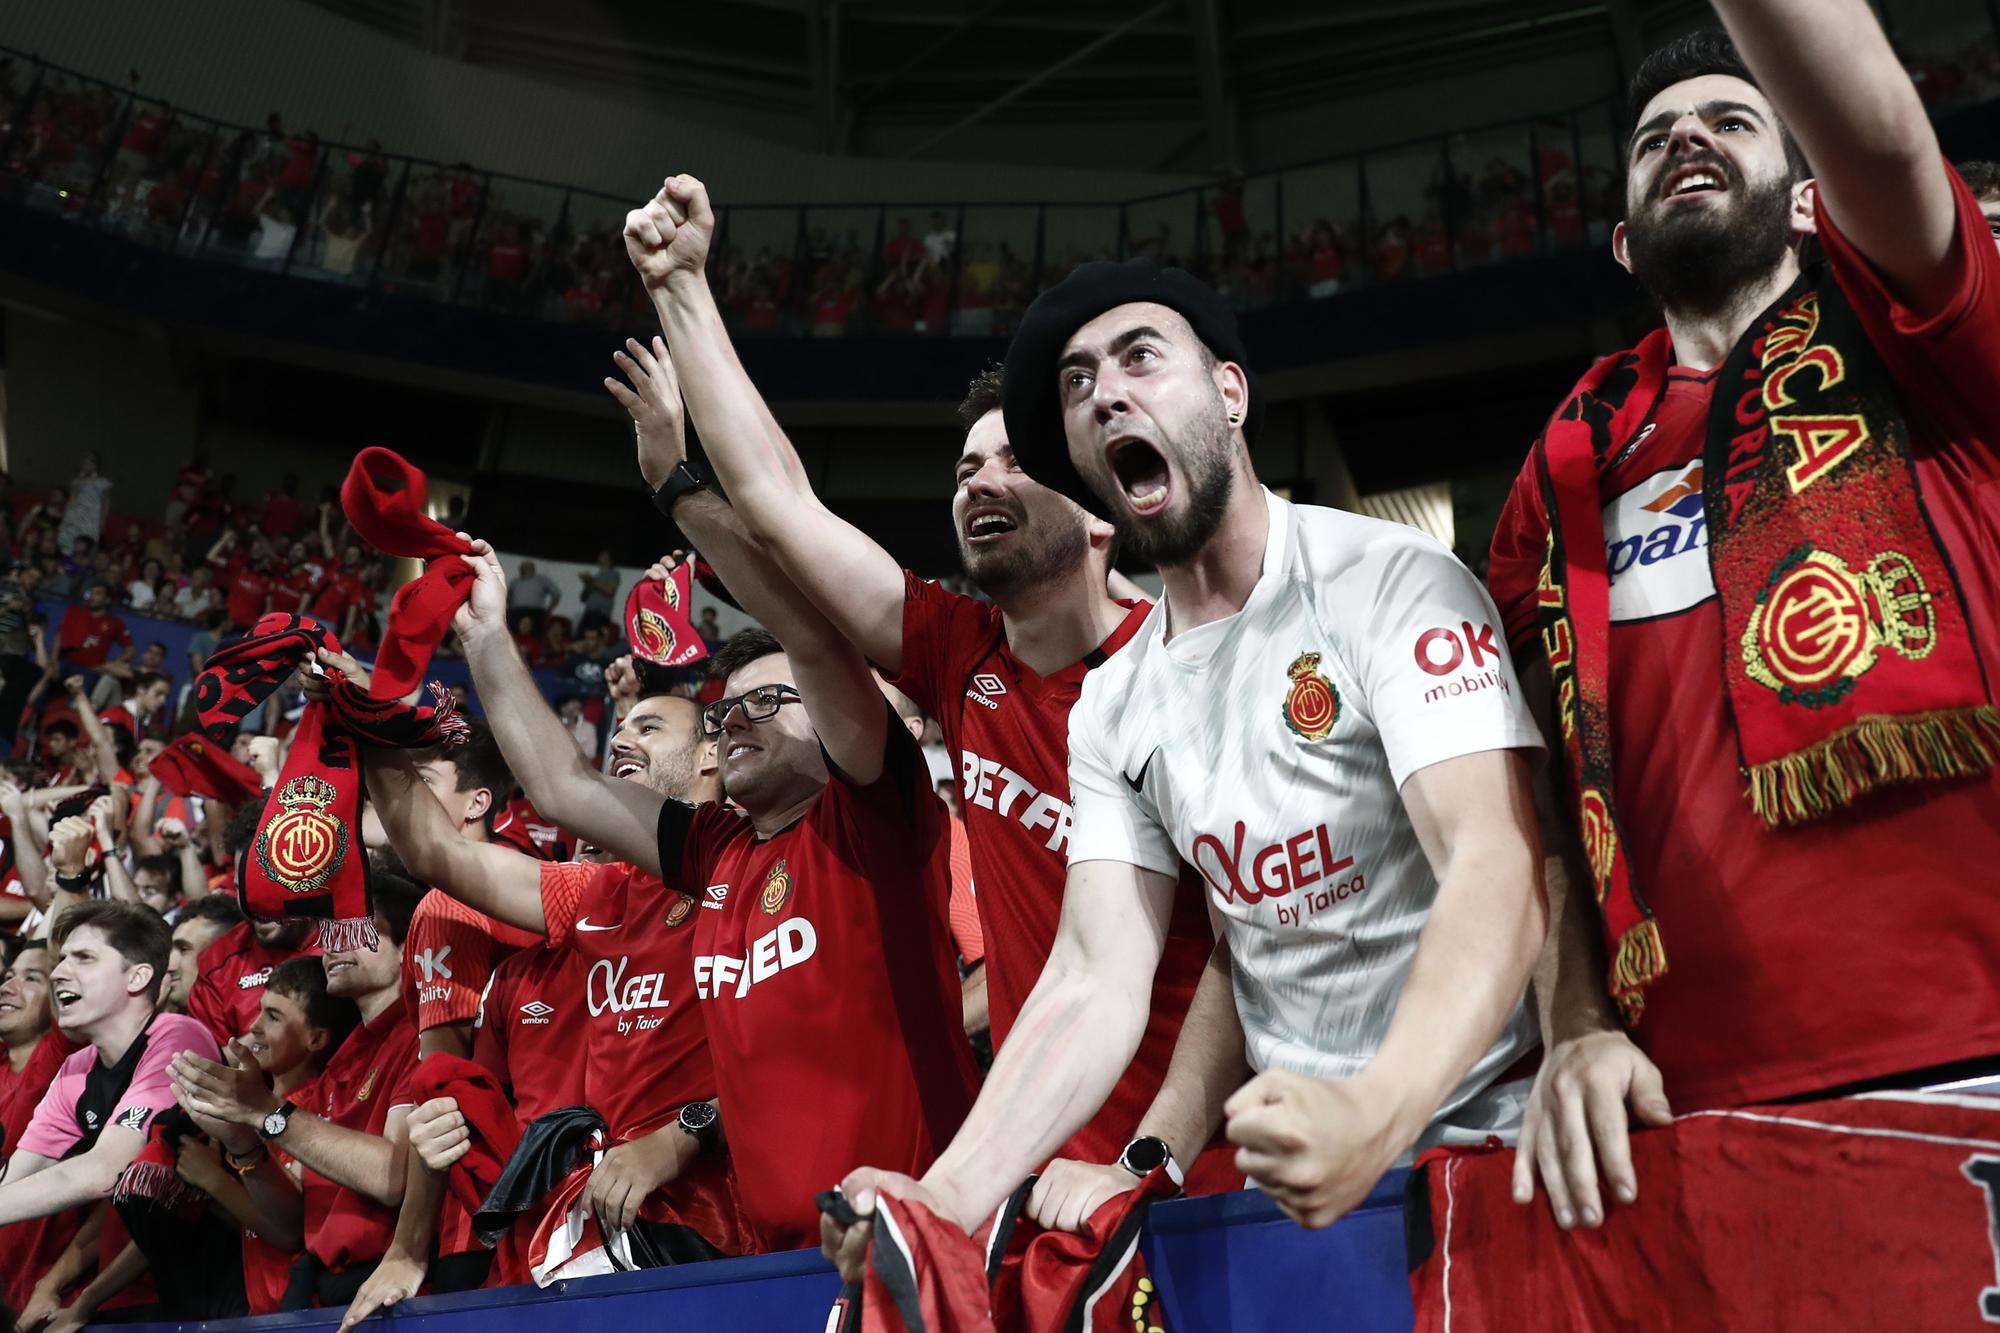 Osasuna-RCD Mallorca: Las fotos de la alegría desatada de los jugadores del Mallorca al conseguir la permanencia